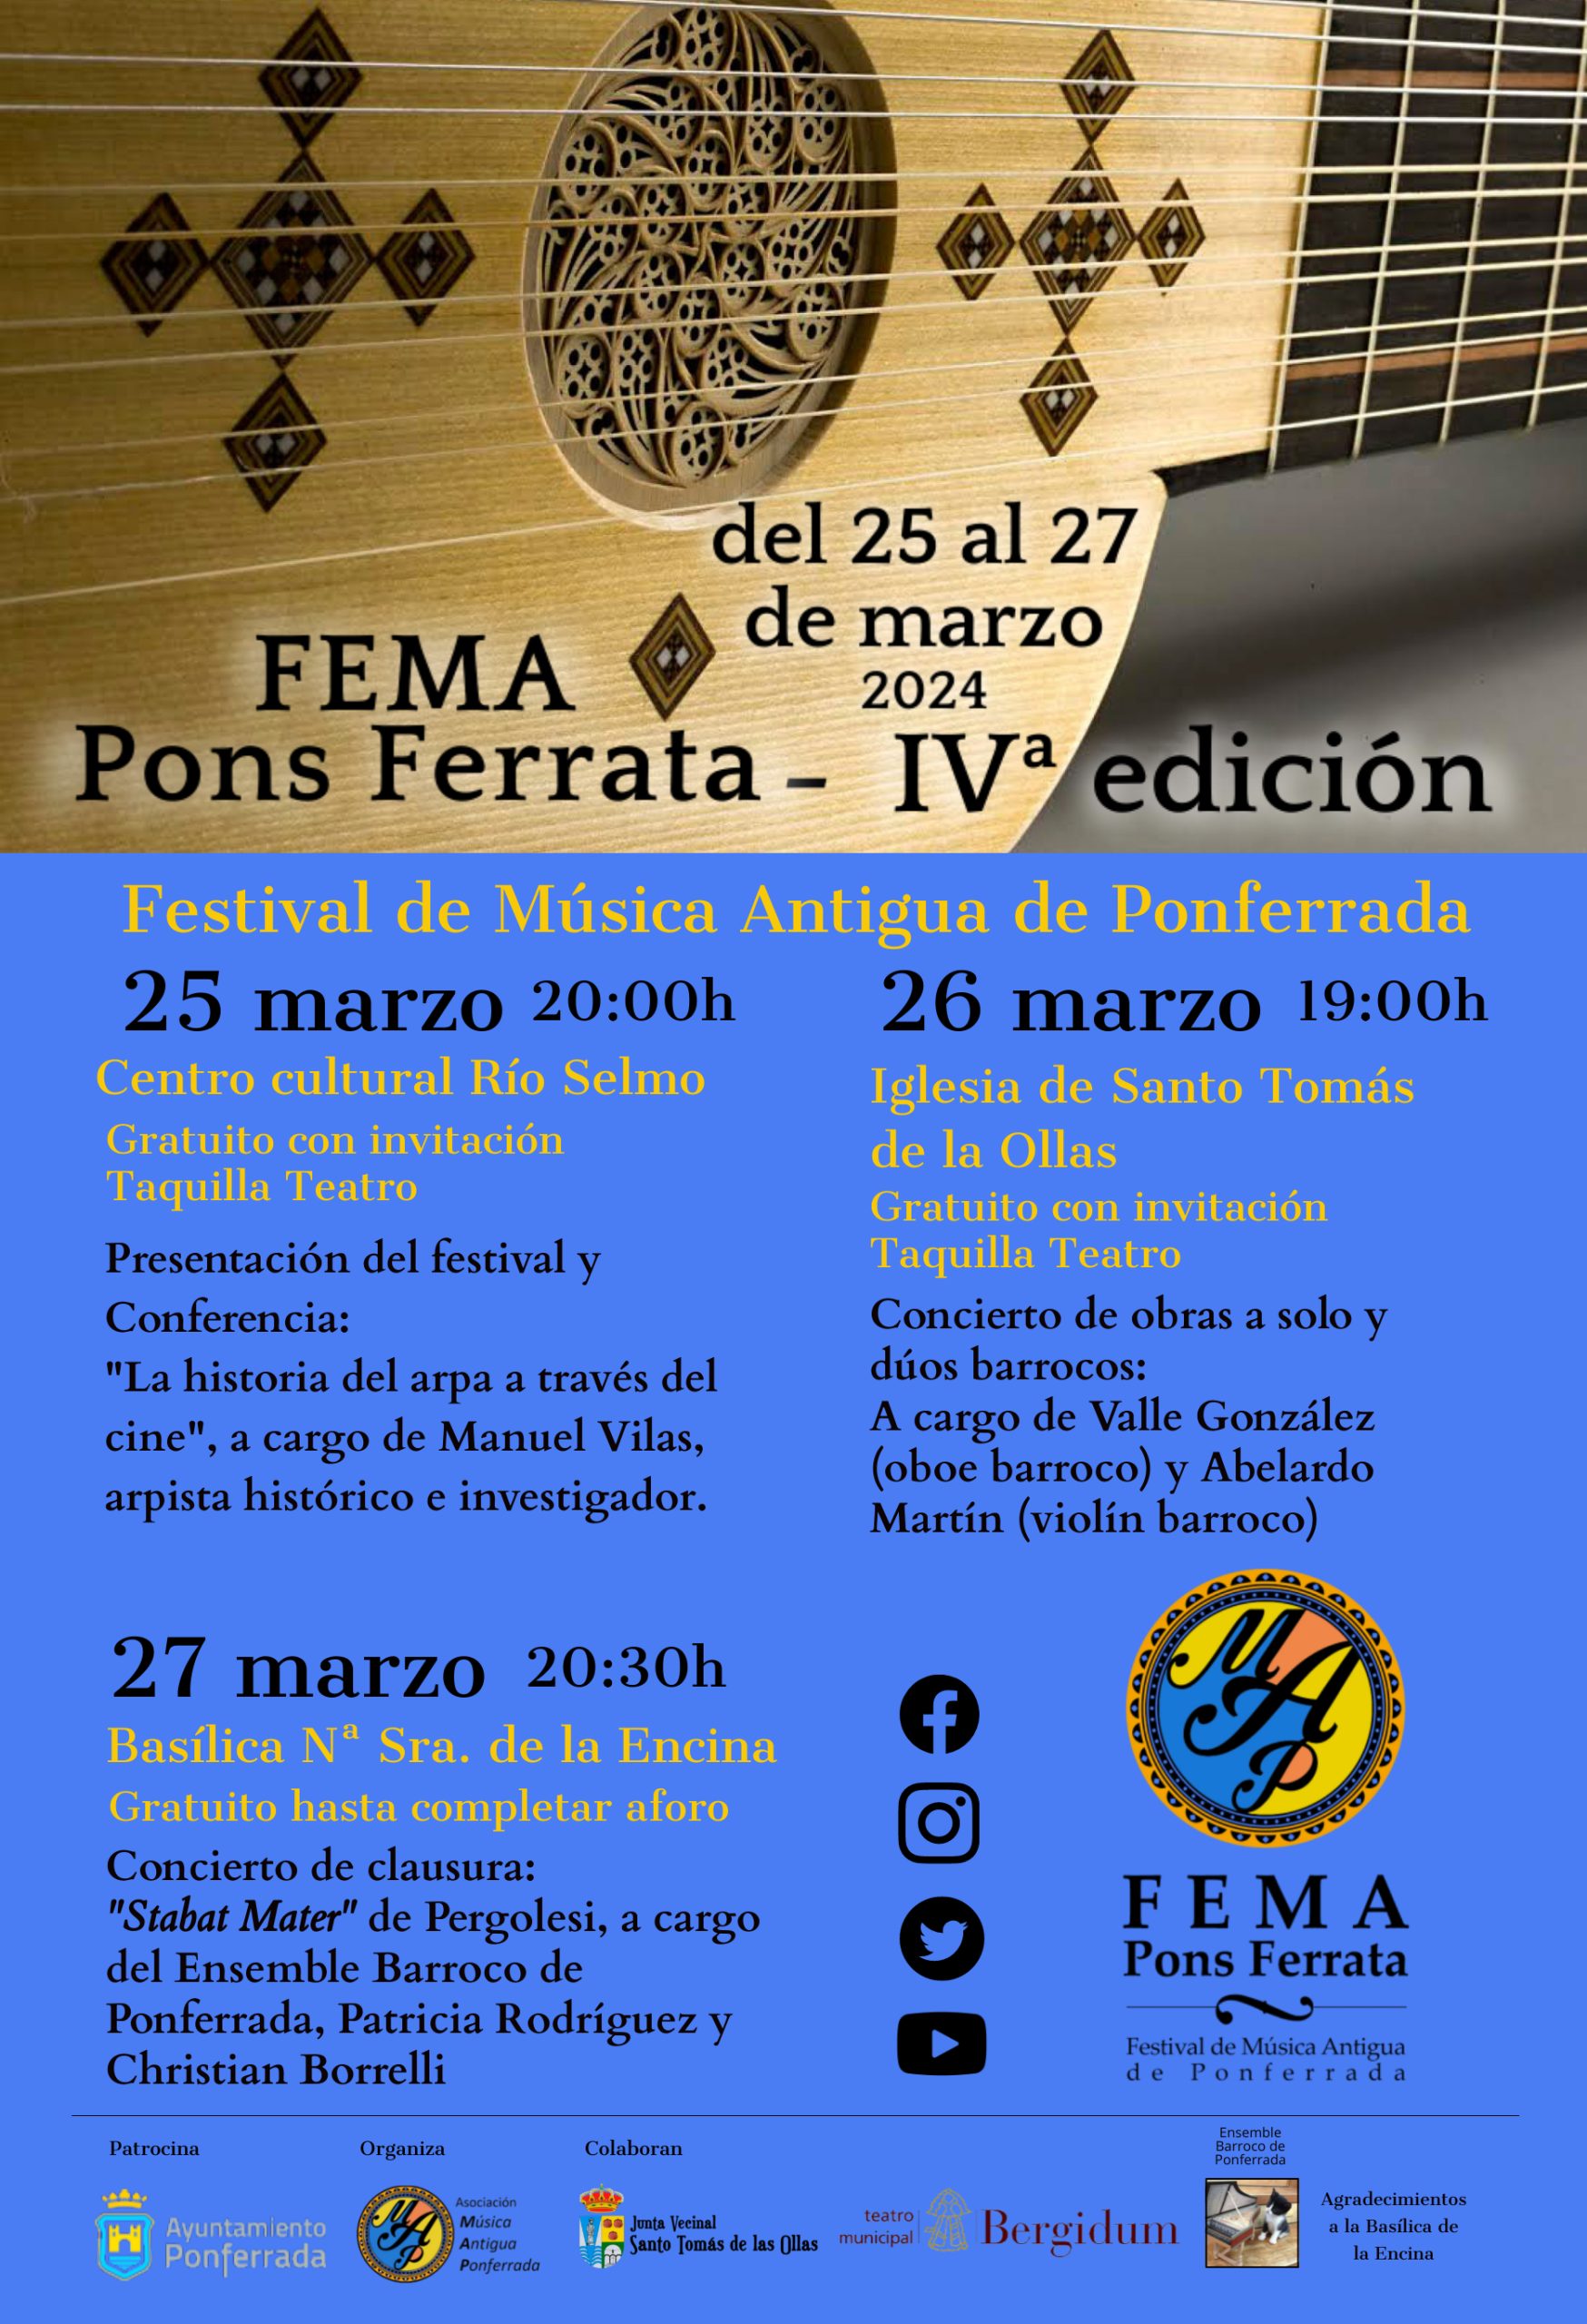 4ª edición del Festival de Música Antigua de Ponferrada “FEMA Pons Ferrata” se celebra del 25 al 27 de marzo 5